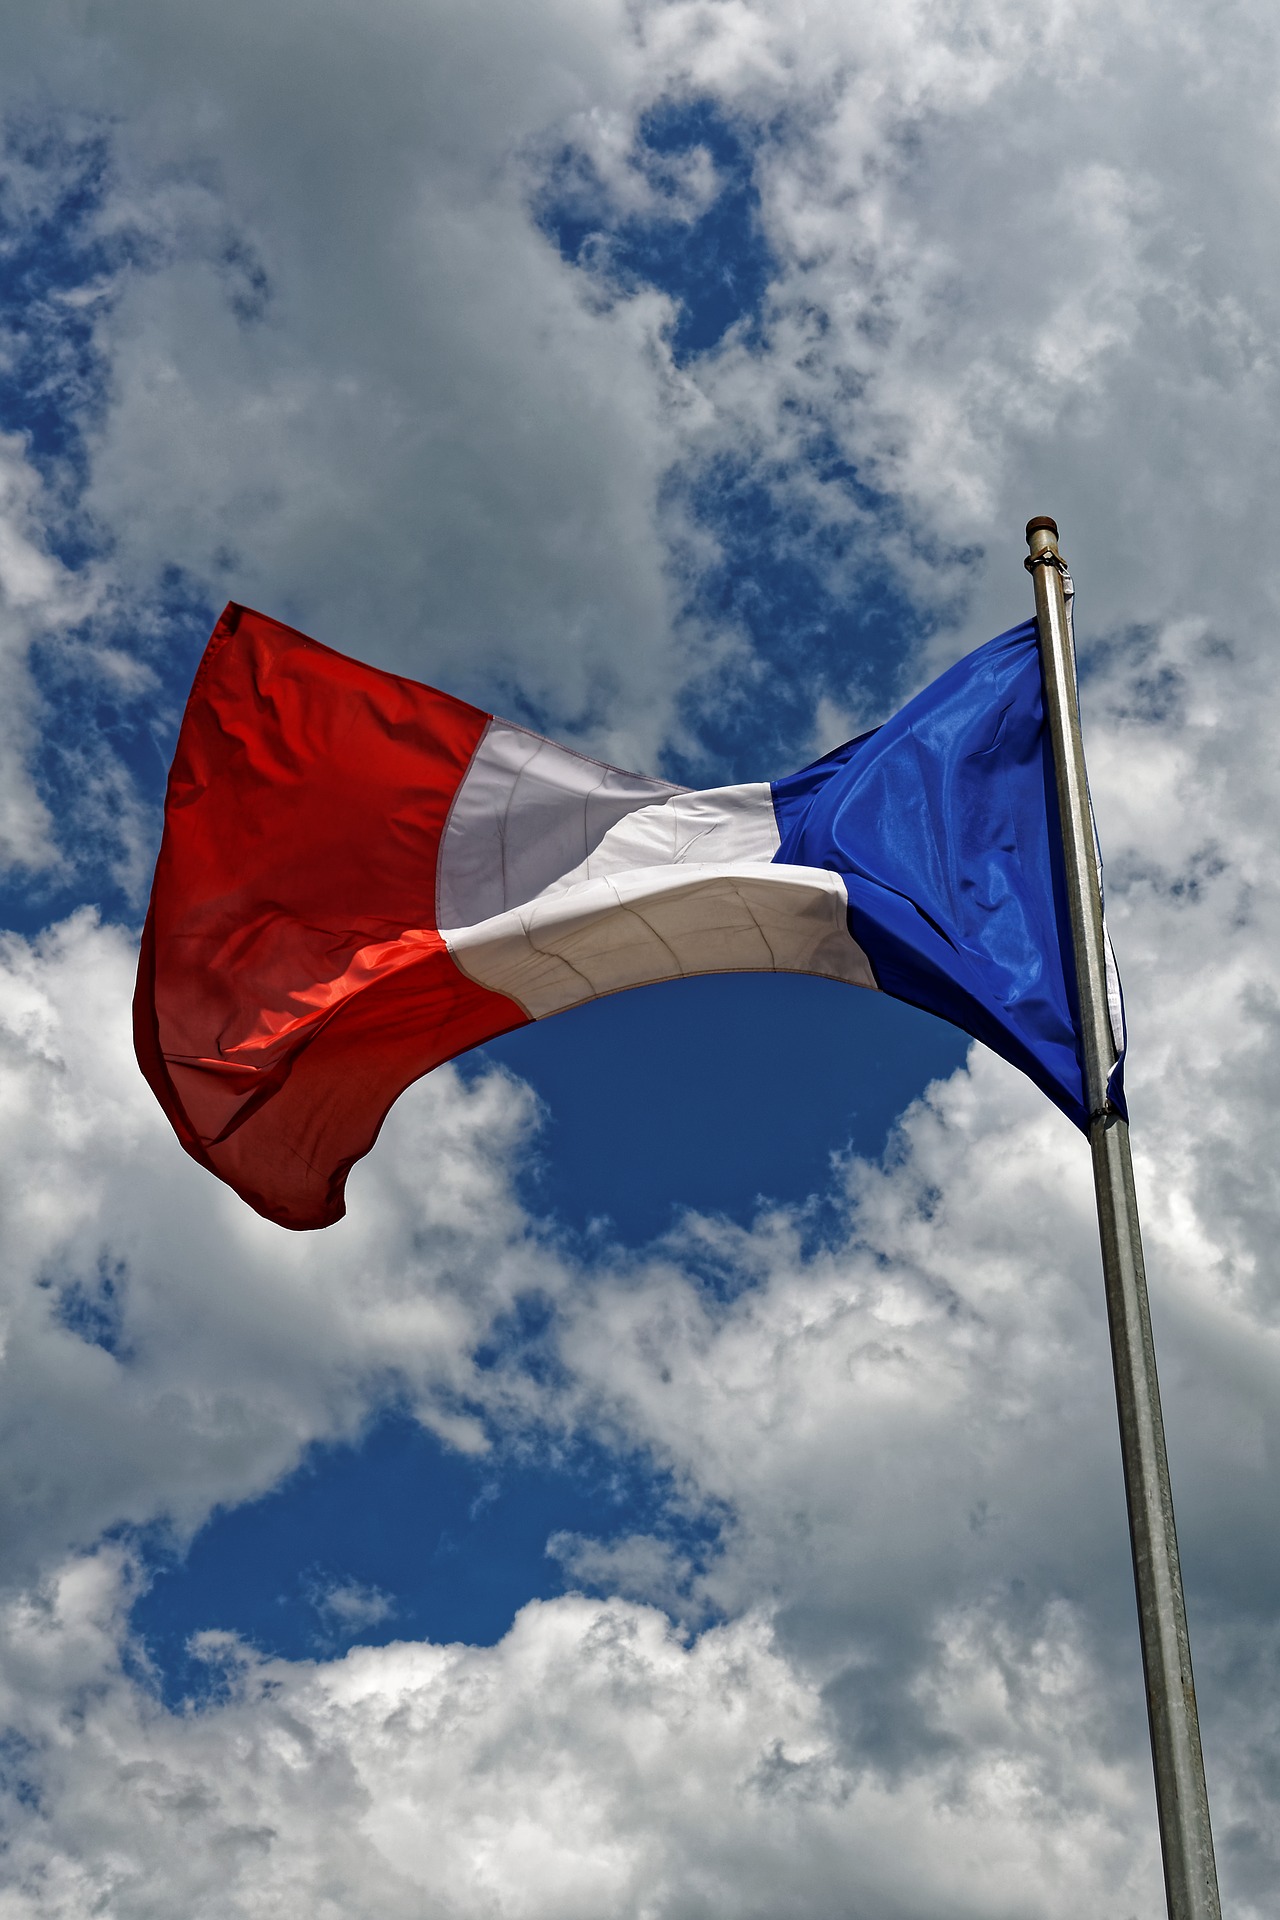 PIB : chute de 8,3% en France en 2020 selon l’Insee